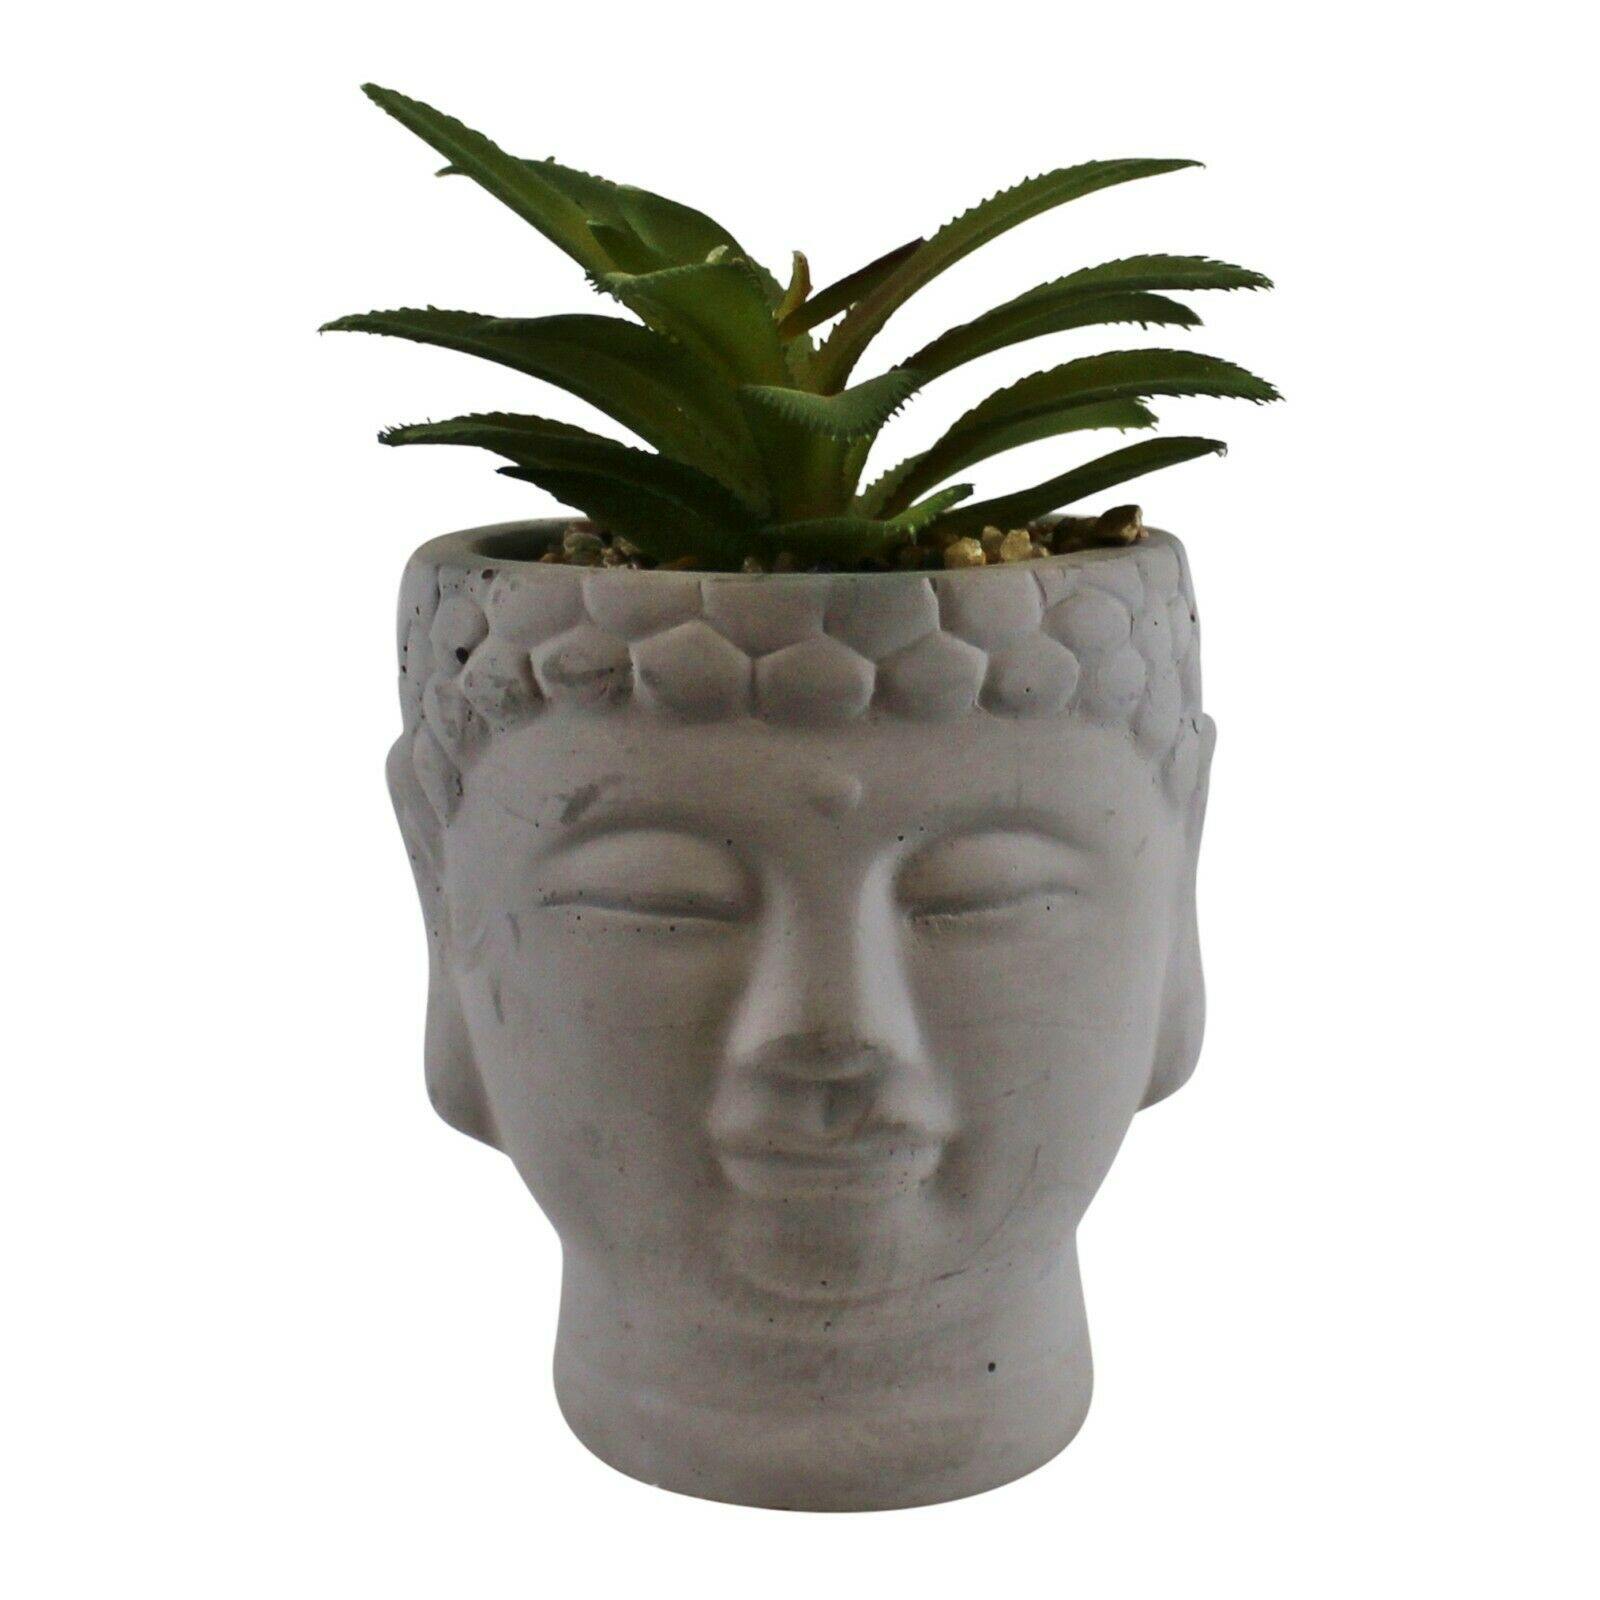 Small Artificial Faux Succulent in Buddha Head Plant Pot Ornament - Kporium Home & Garden